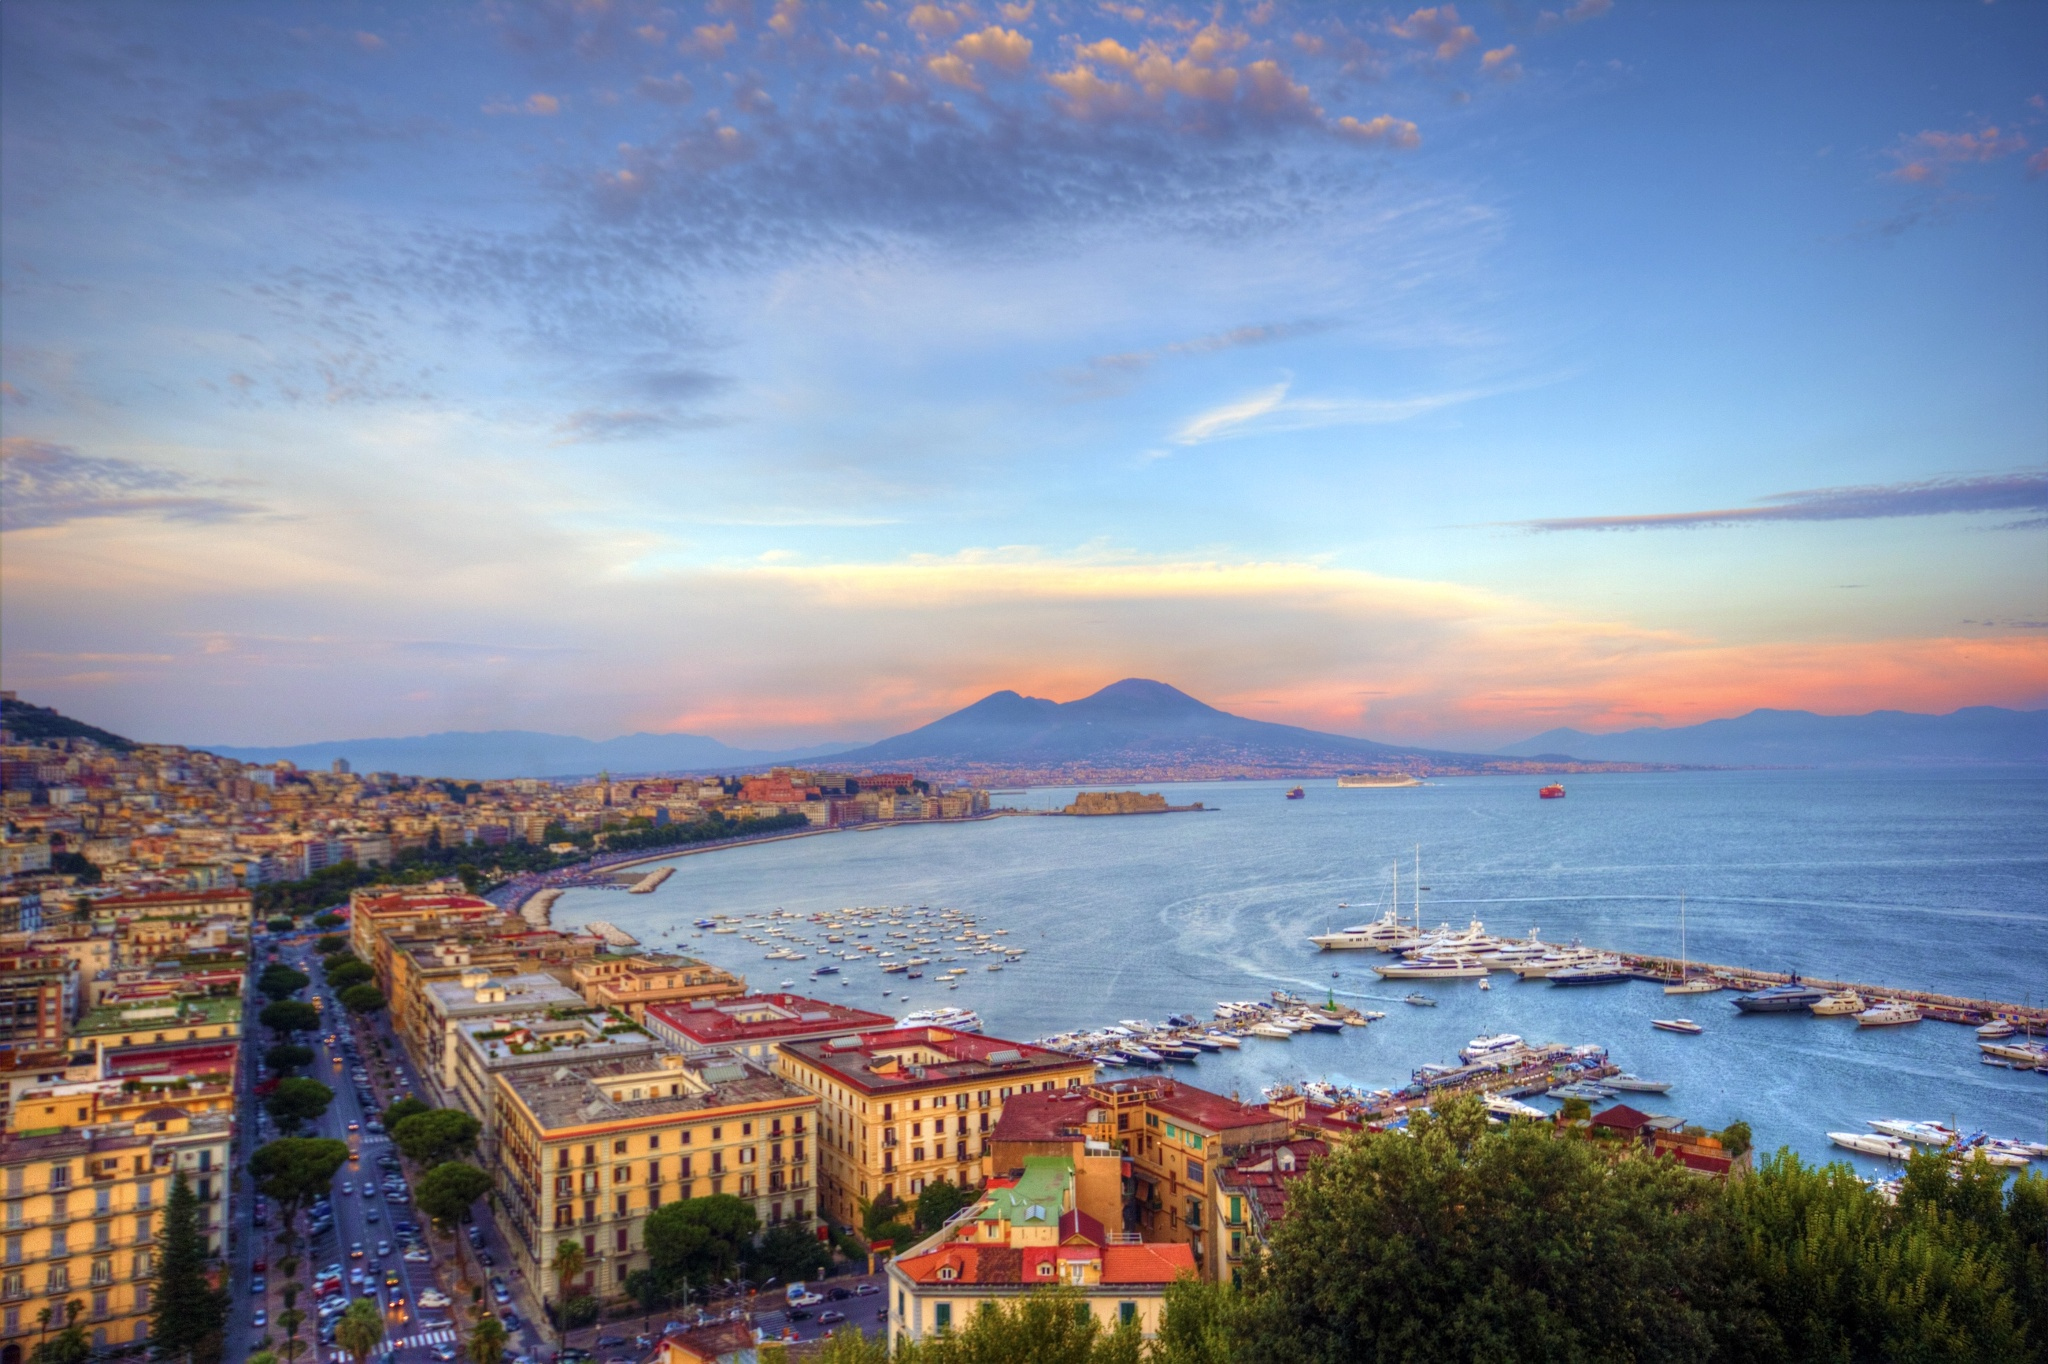 General 2048x1364 Naples Campania landscape Italy bay sea Mount Vesuvius